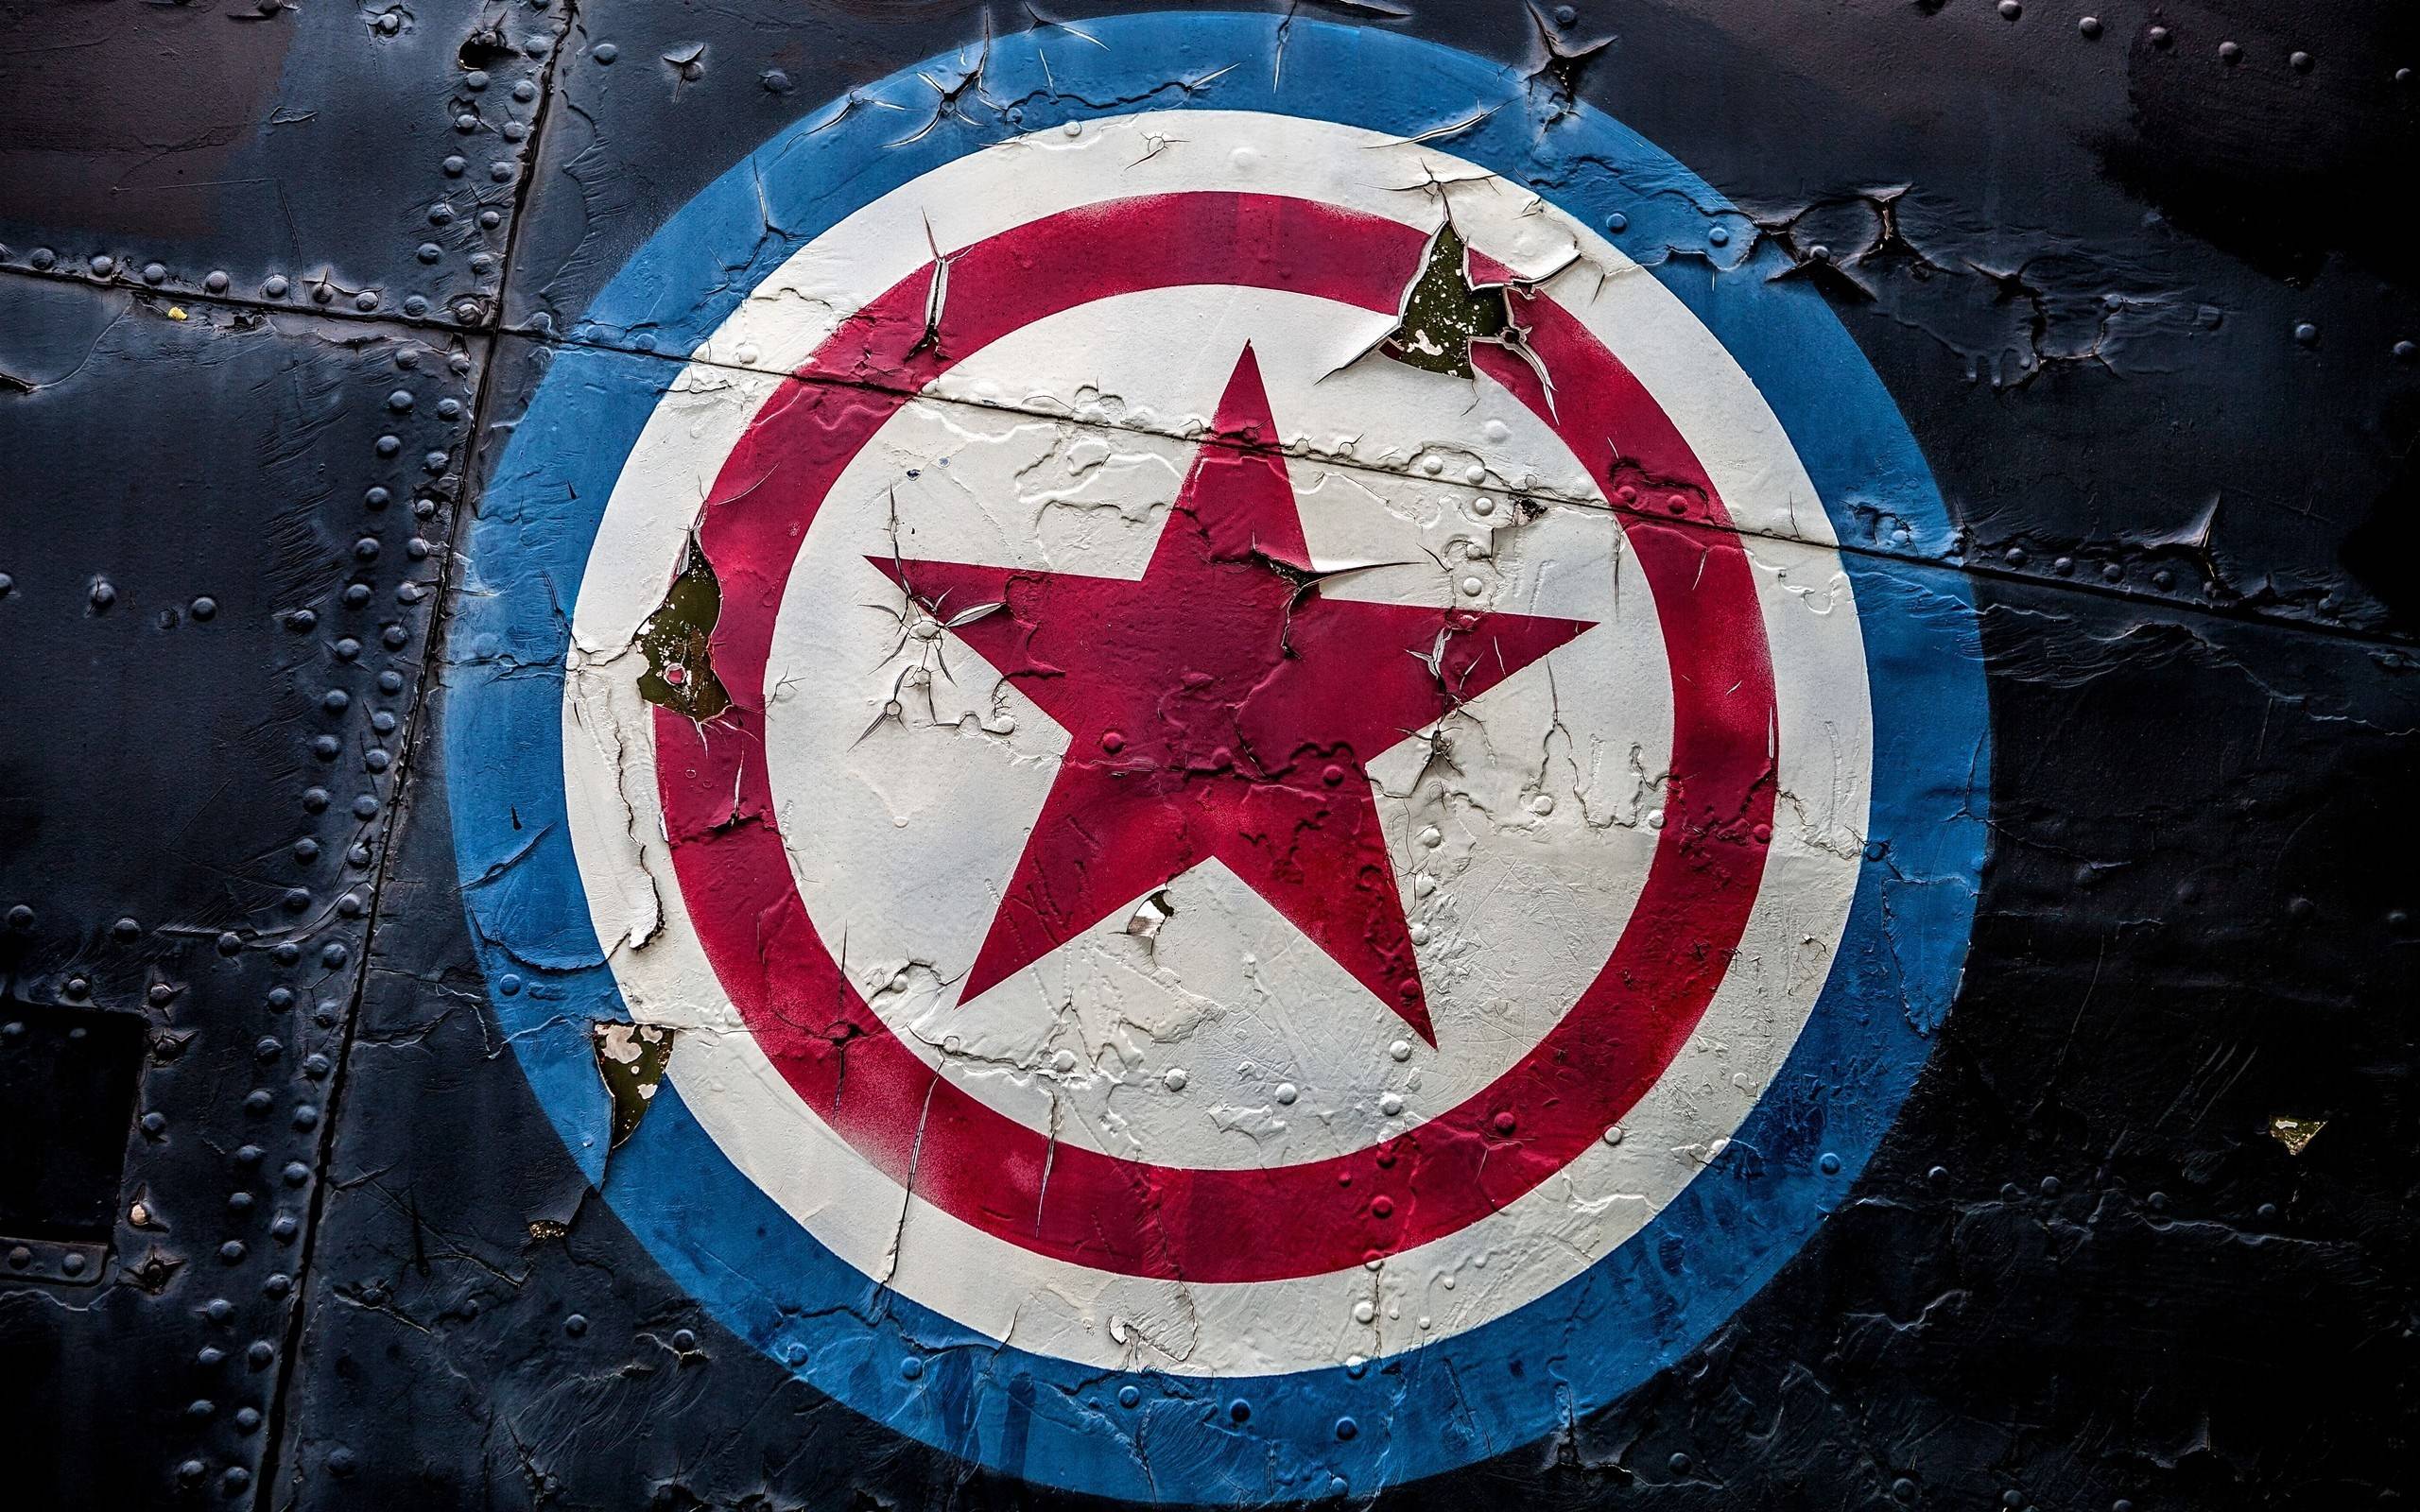 Captain America Full Hd Wallpapers Wallpaper Cave